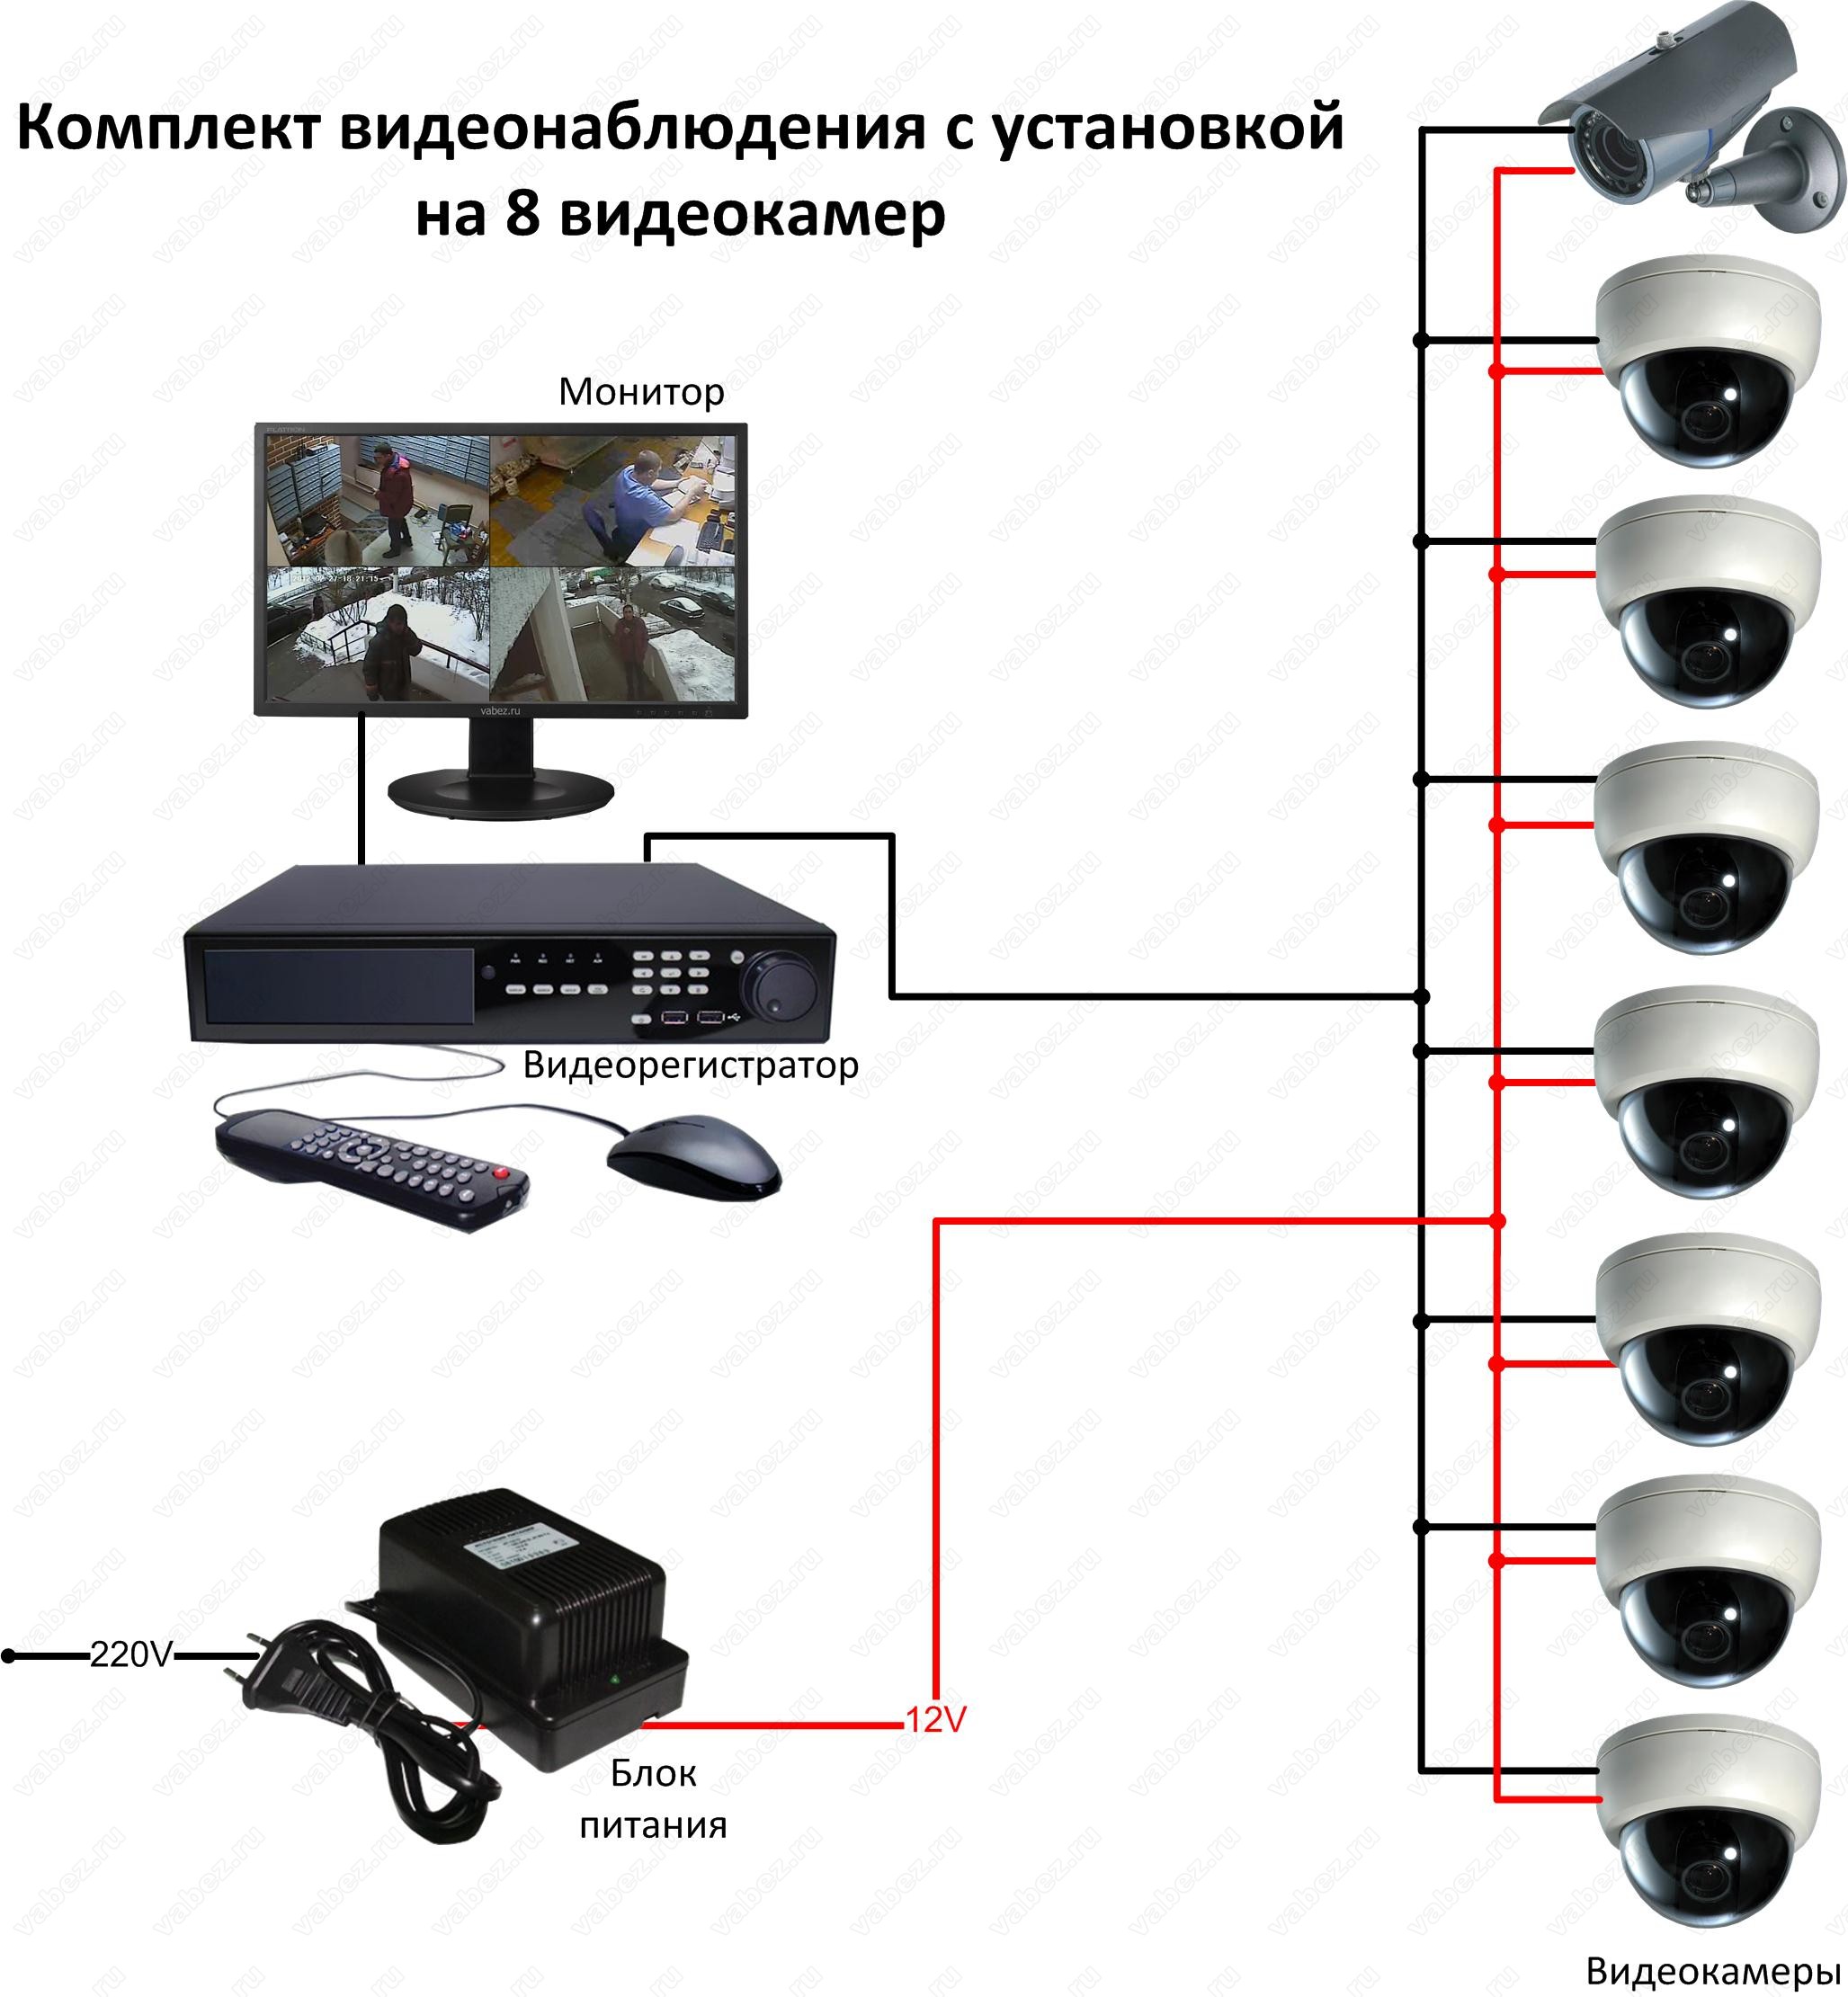 Описание регистраторов. Схема подключения камеры видеонаблюдения схема. Подсоединение камеры видеонаблюдения схема подключения. Схема подсоединения камер видеонаблюдения. Схема подключения видеокамеры наблюдения.